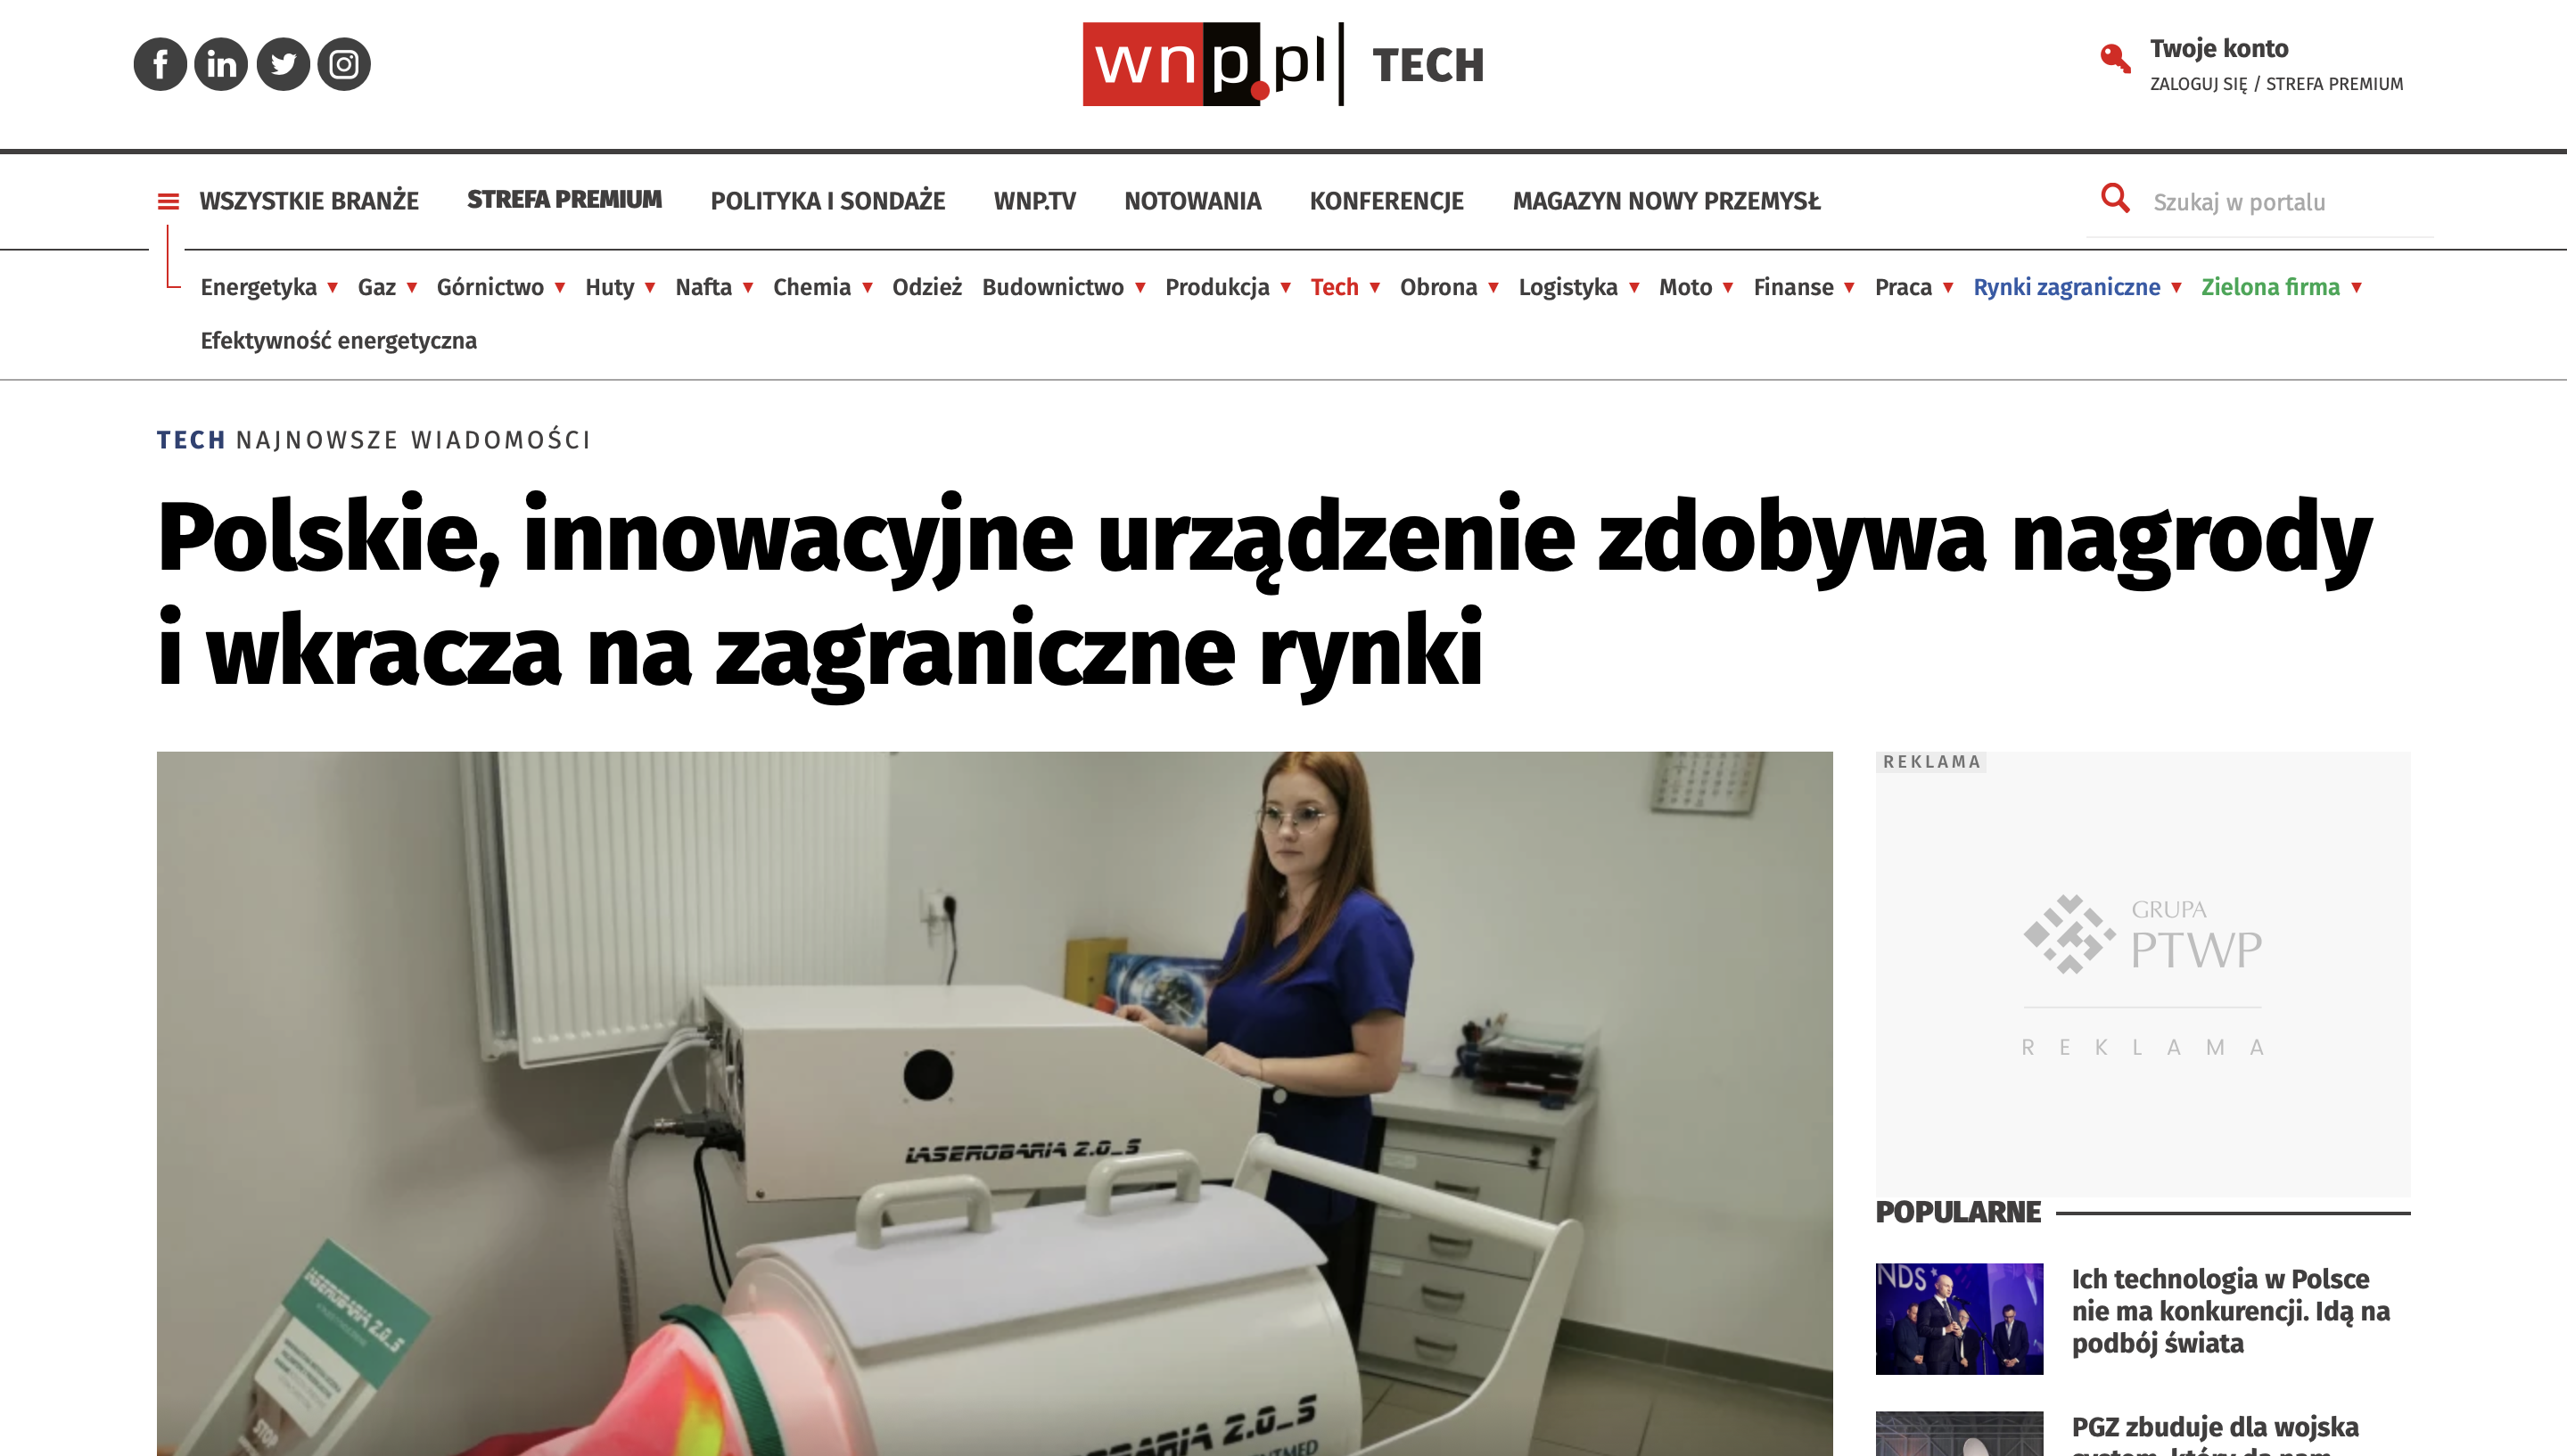 Polskie, innowacyjne urządzenie zdobywa nagrody i wkracza na rynku zagraniczne" czyli nowa publikacja o Laserobarii 2.0_S na łamach prasy medycznej